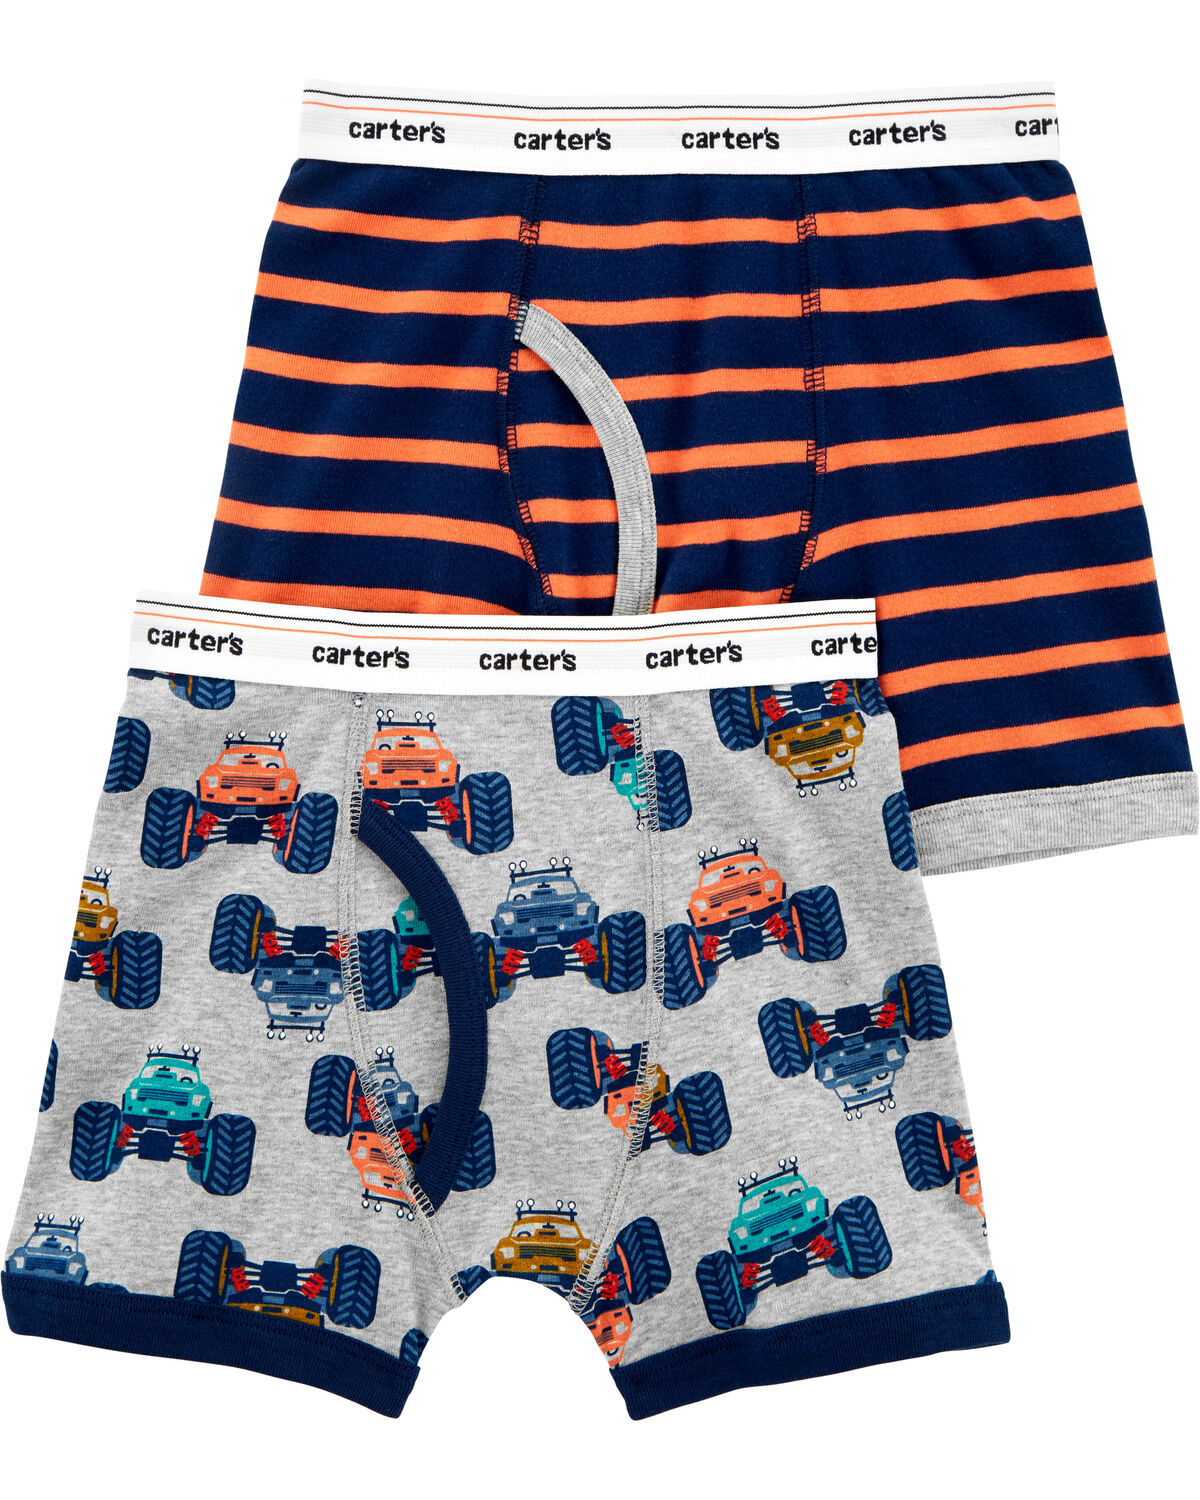  Little Boys Cotton Truck Car Brief Toddler Underwear Size 4T  Multicoloured